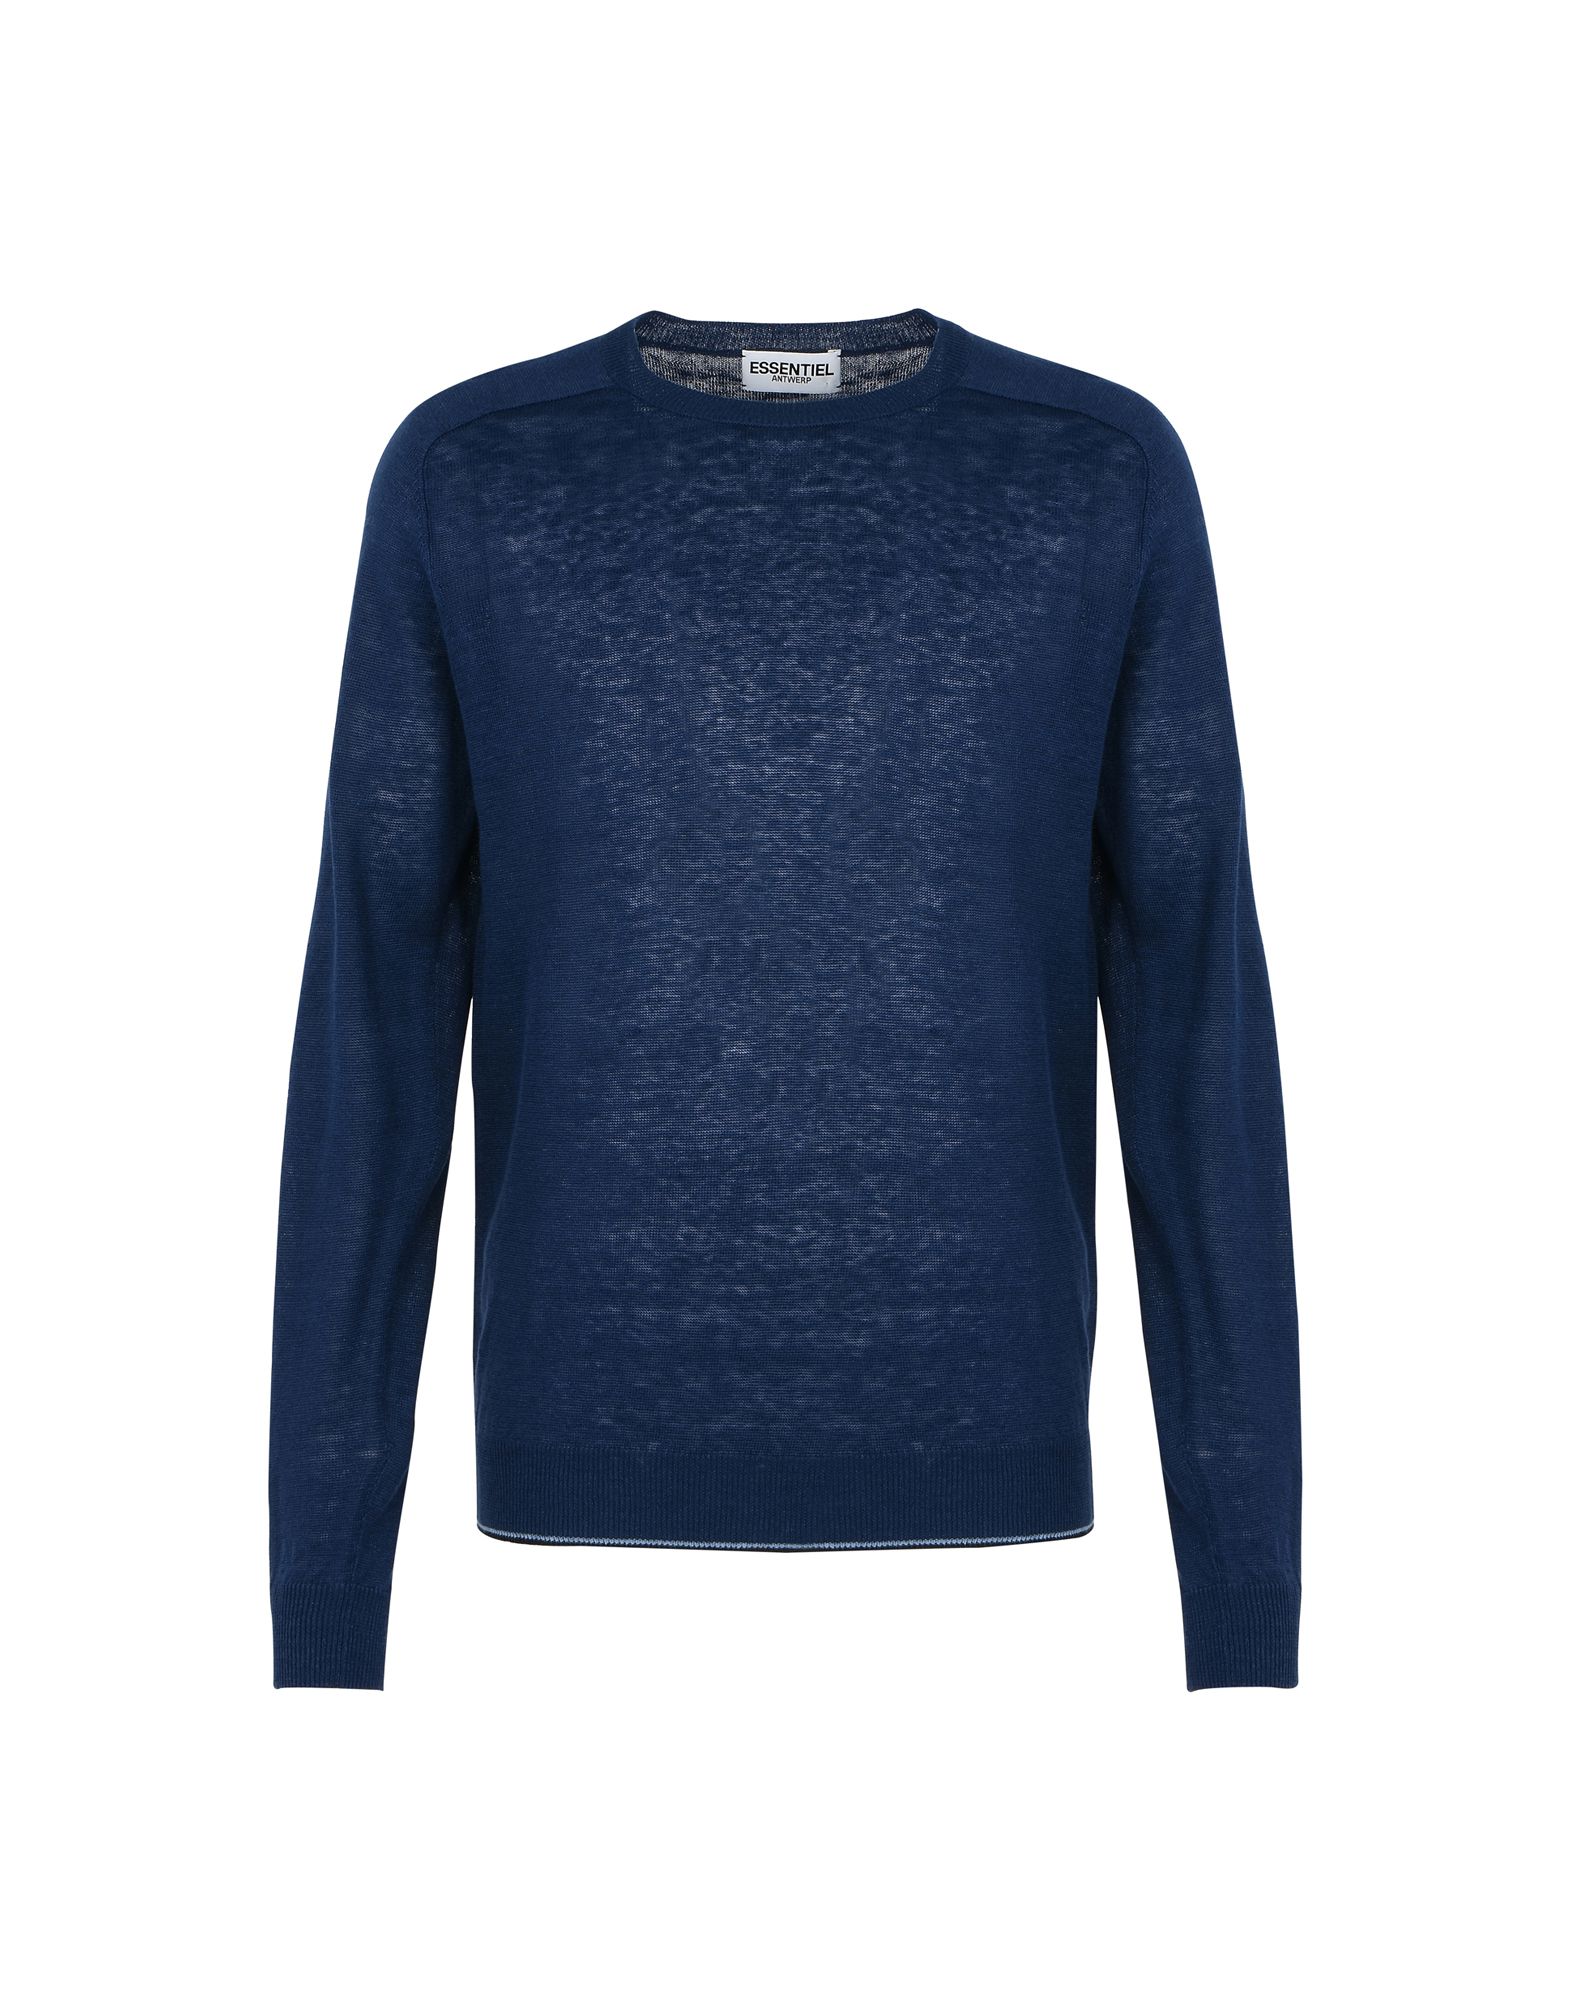 《送料無料》ESSENTIEL ANTWERP メンズ プルオーバー ブルー M 麻 100% M-knewest raglan sweater